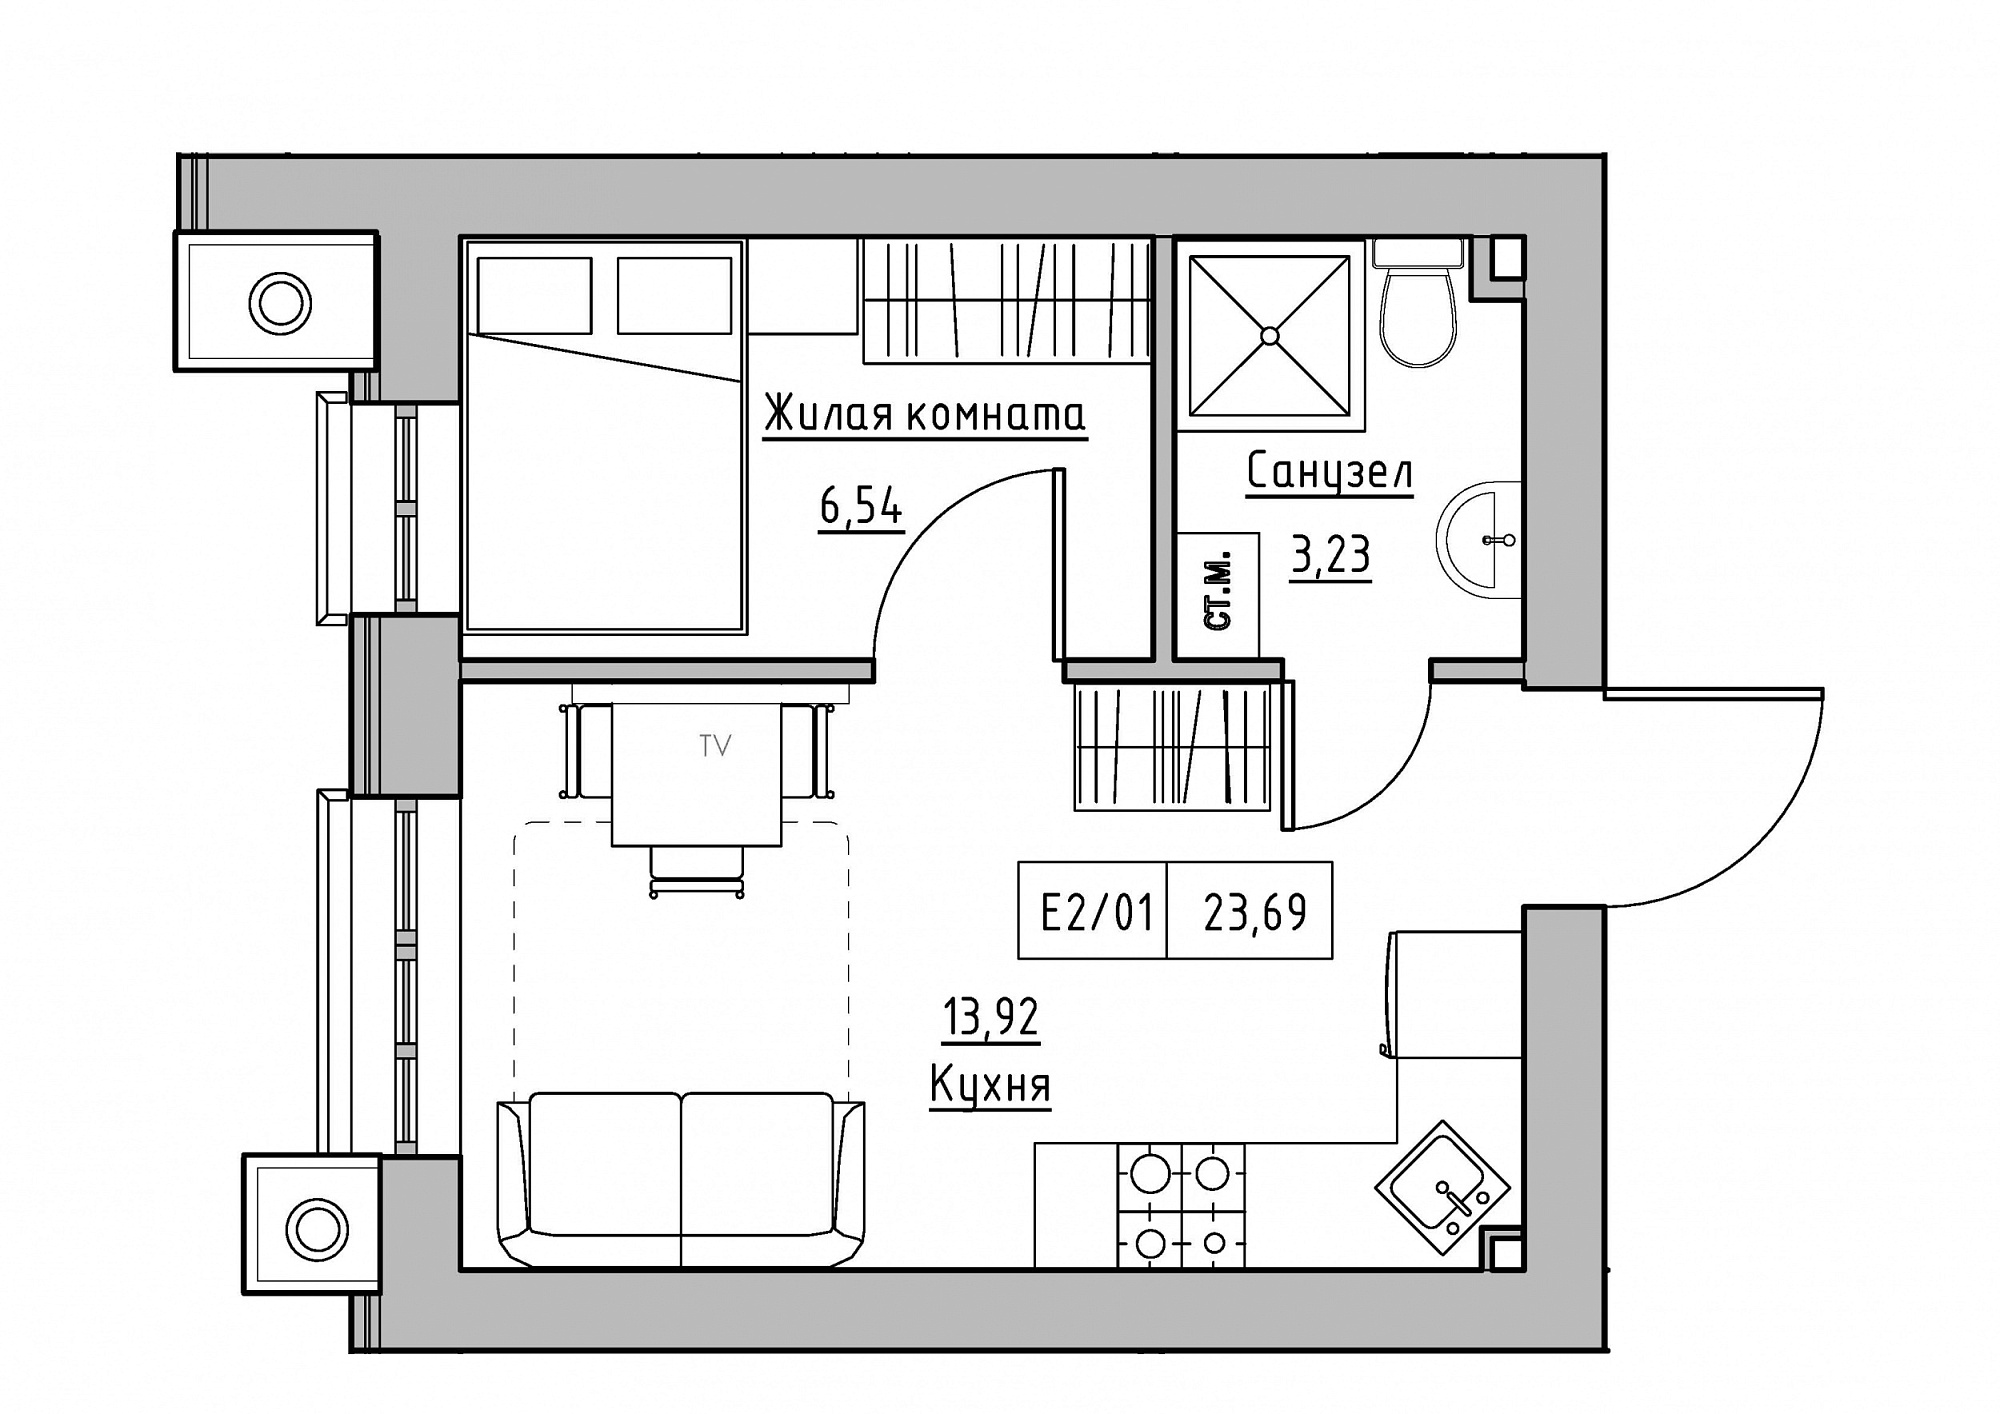 Планировка 1-к квартира площей 23.69м2, KS-012-01/0009.